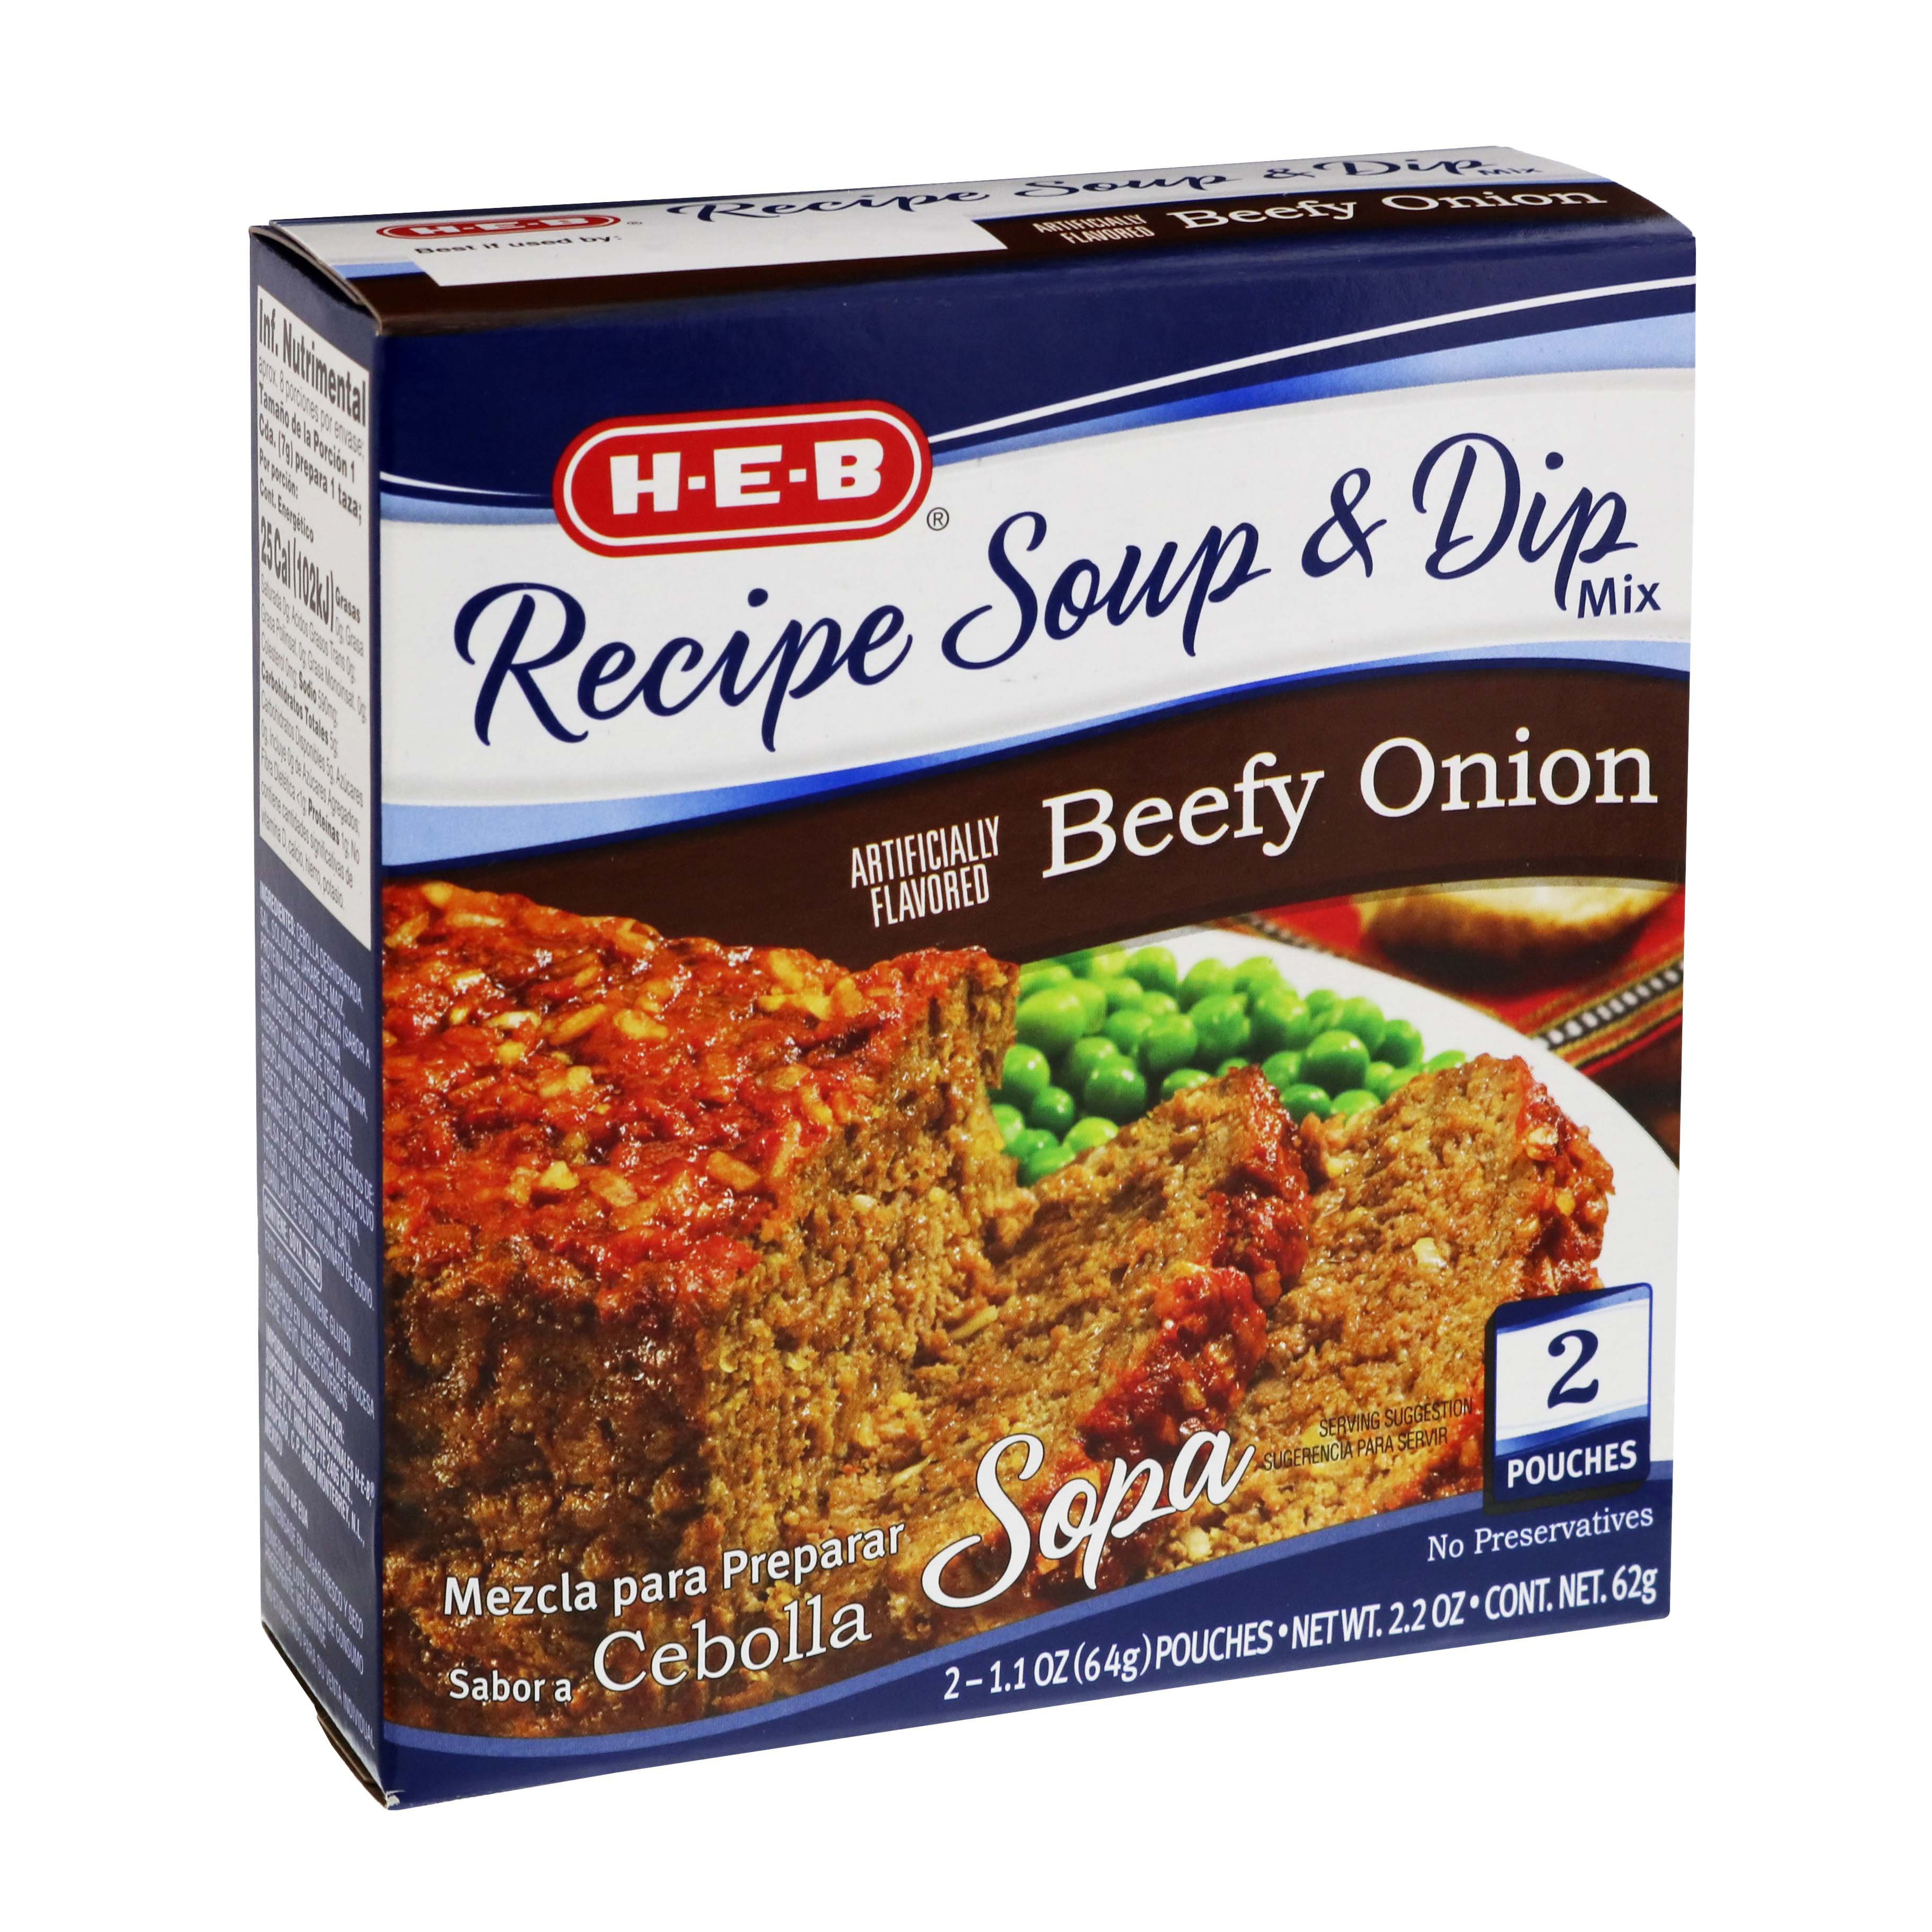 H-E-B Onion Recipe Soup and Dip Mix - Shop Soups & Chili at H-E-B